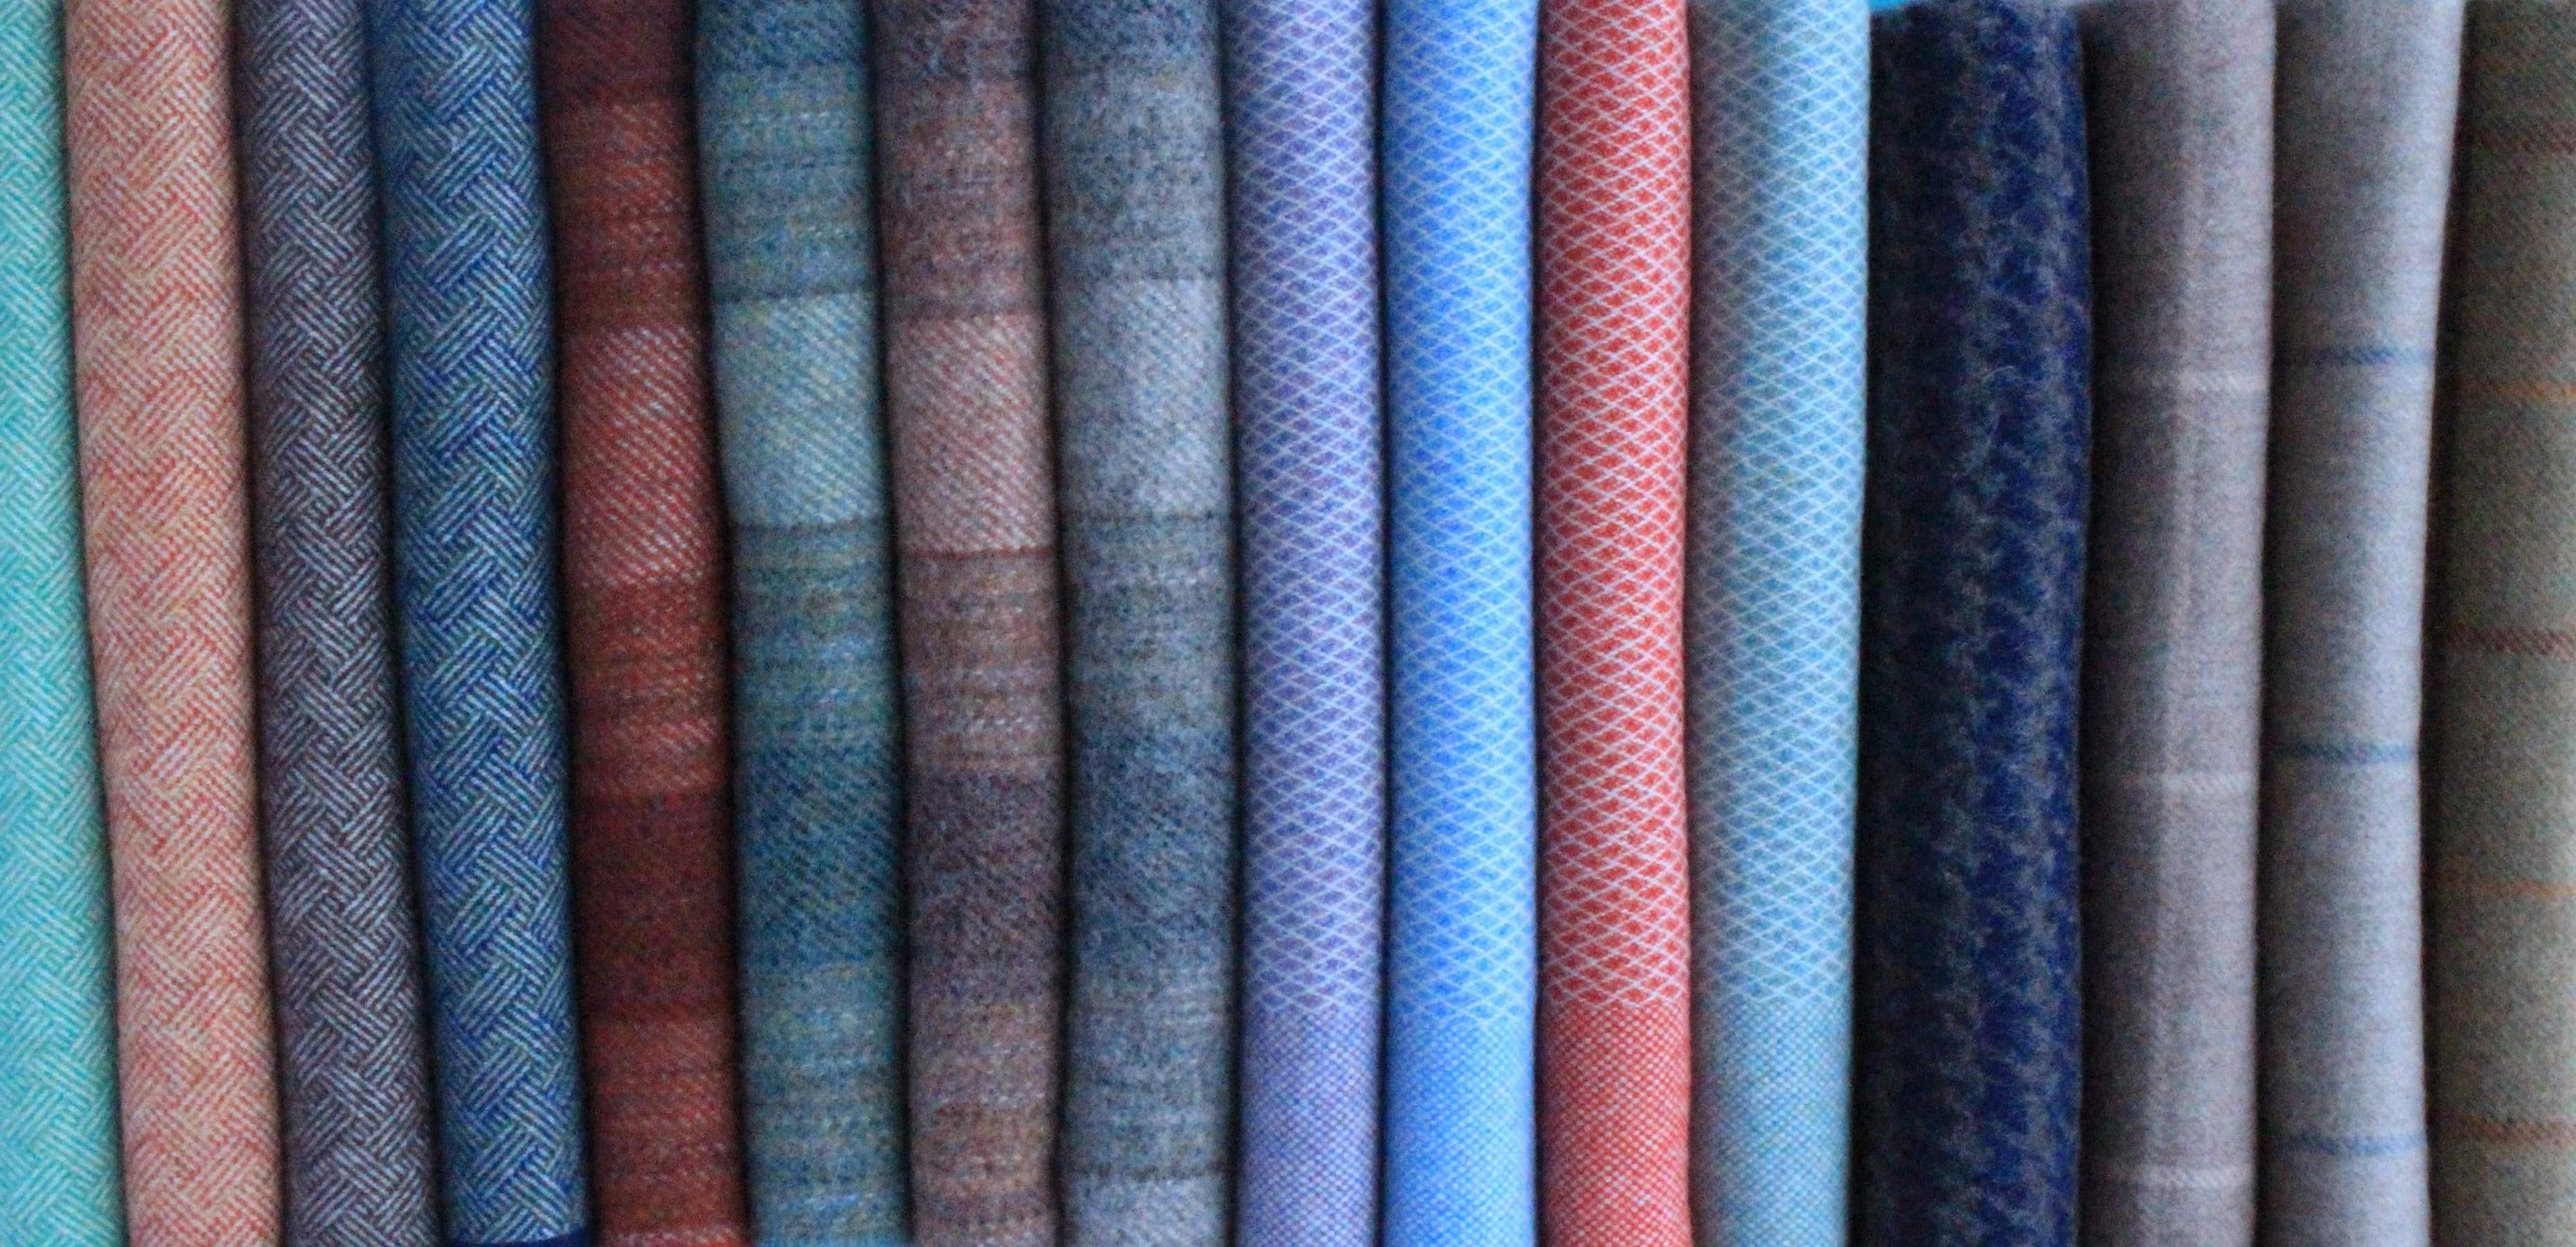 Lammwolldencke-Kaschmirdecken-Wolldecken-Tagesdecken-Sofadecken-Wohndecken-Bettüberwürfe-Hergestellt-in-Schottland